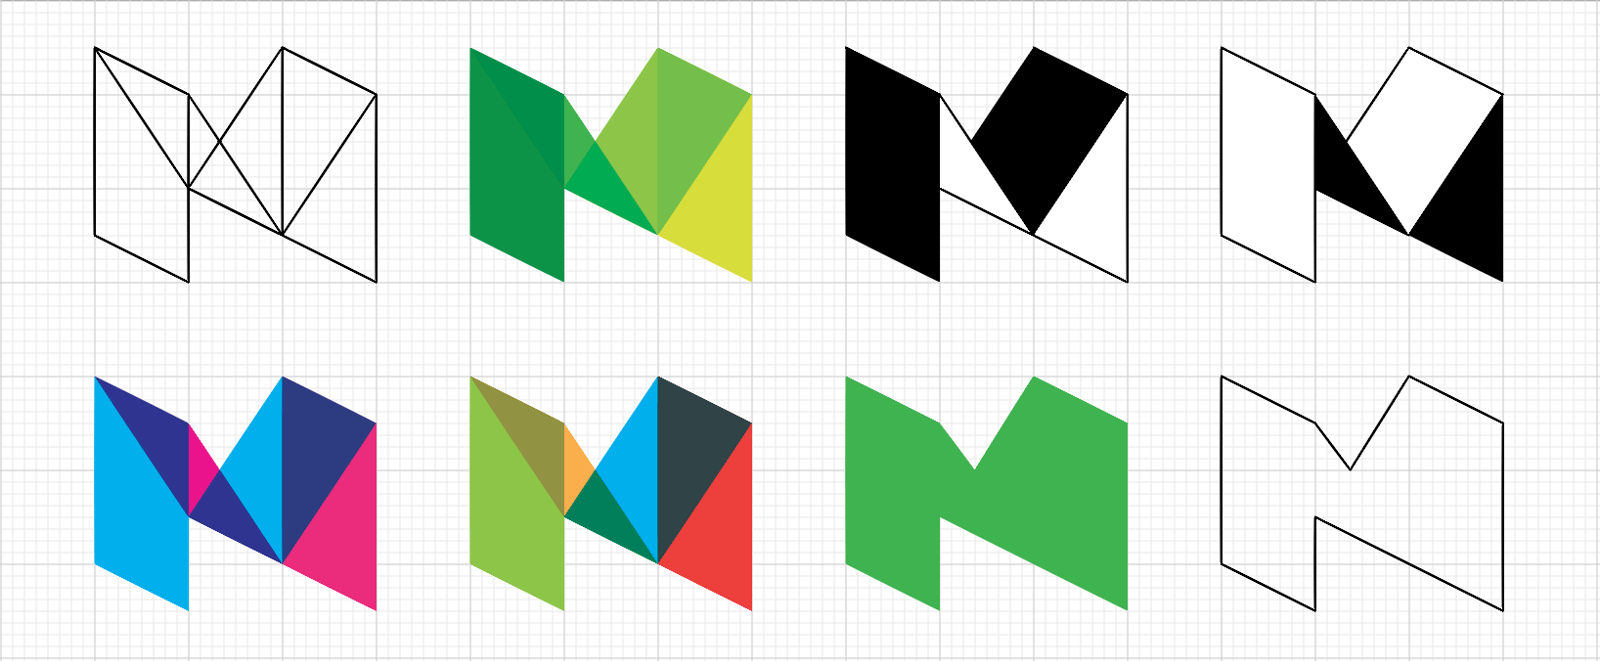 Medium Logo - The Story Behind Medium's New Logo [2015] – 3 min read